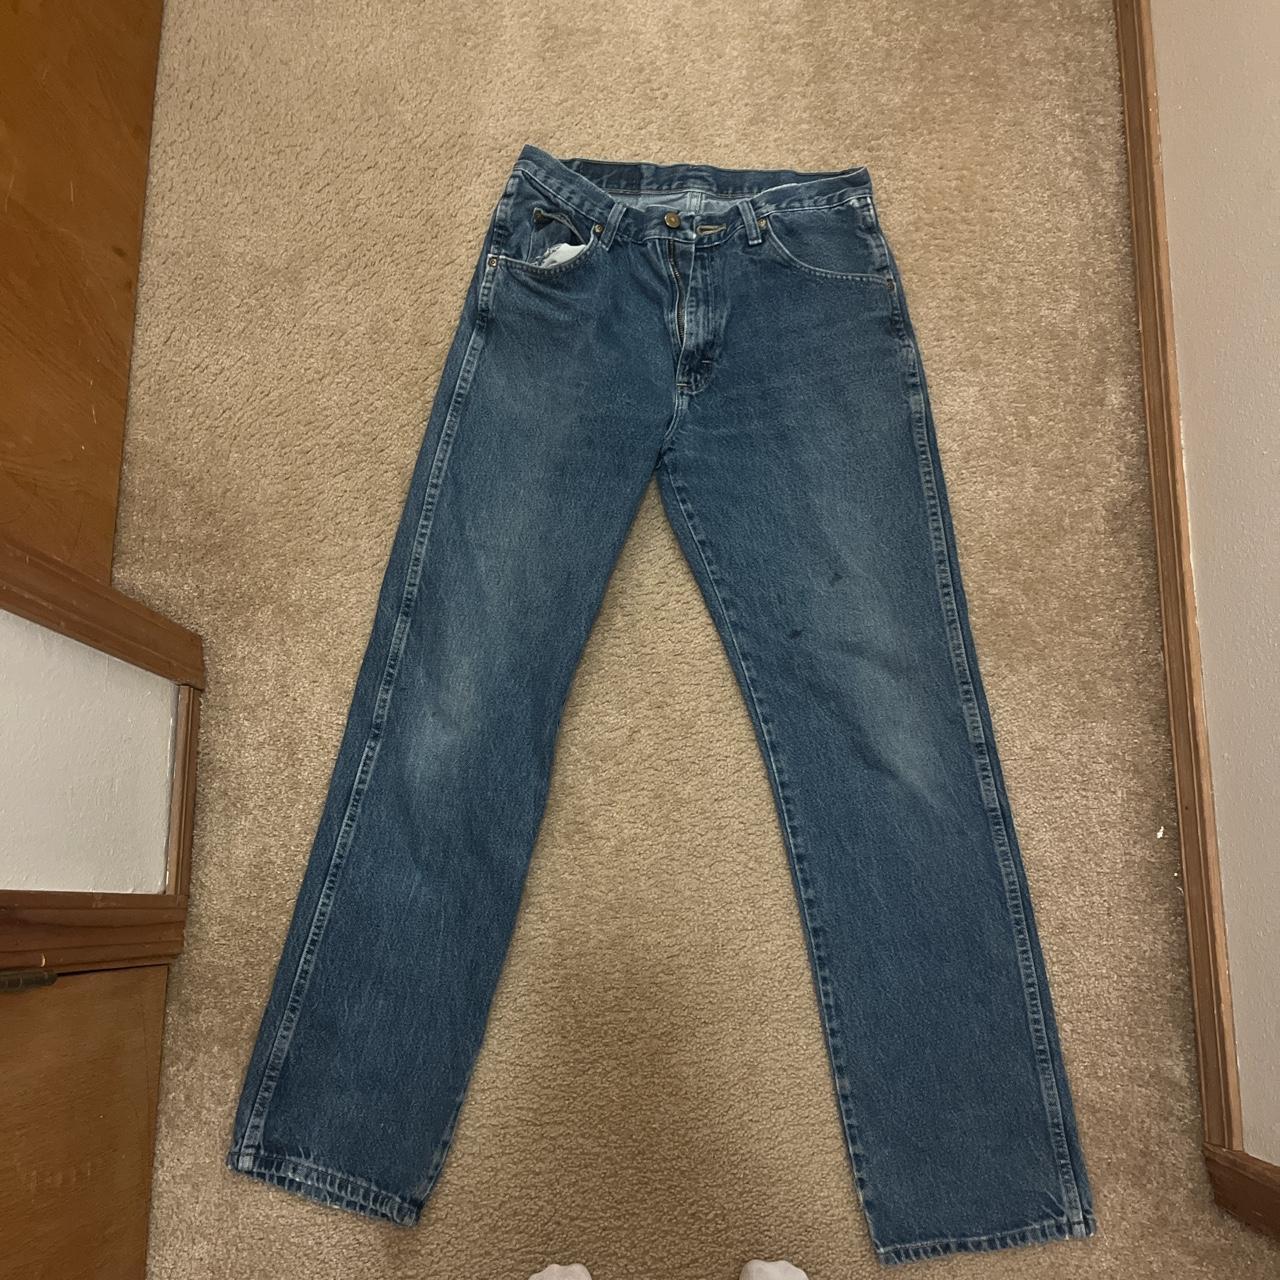 wrangler denim jeans size 32 x 34 regular fit - Depop